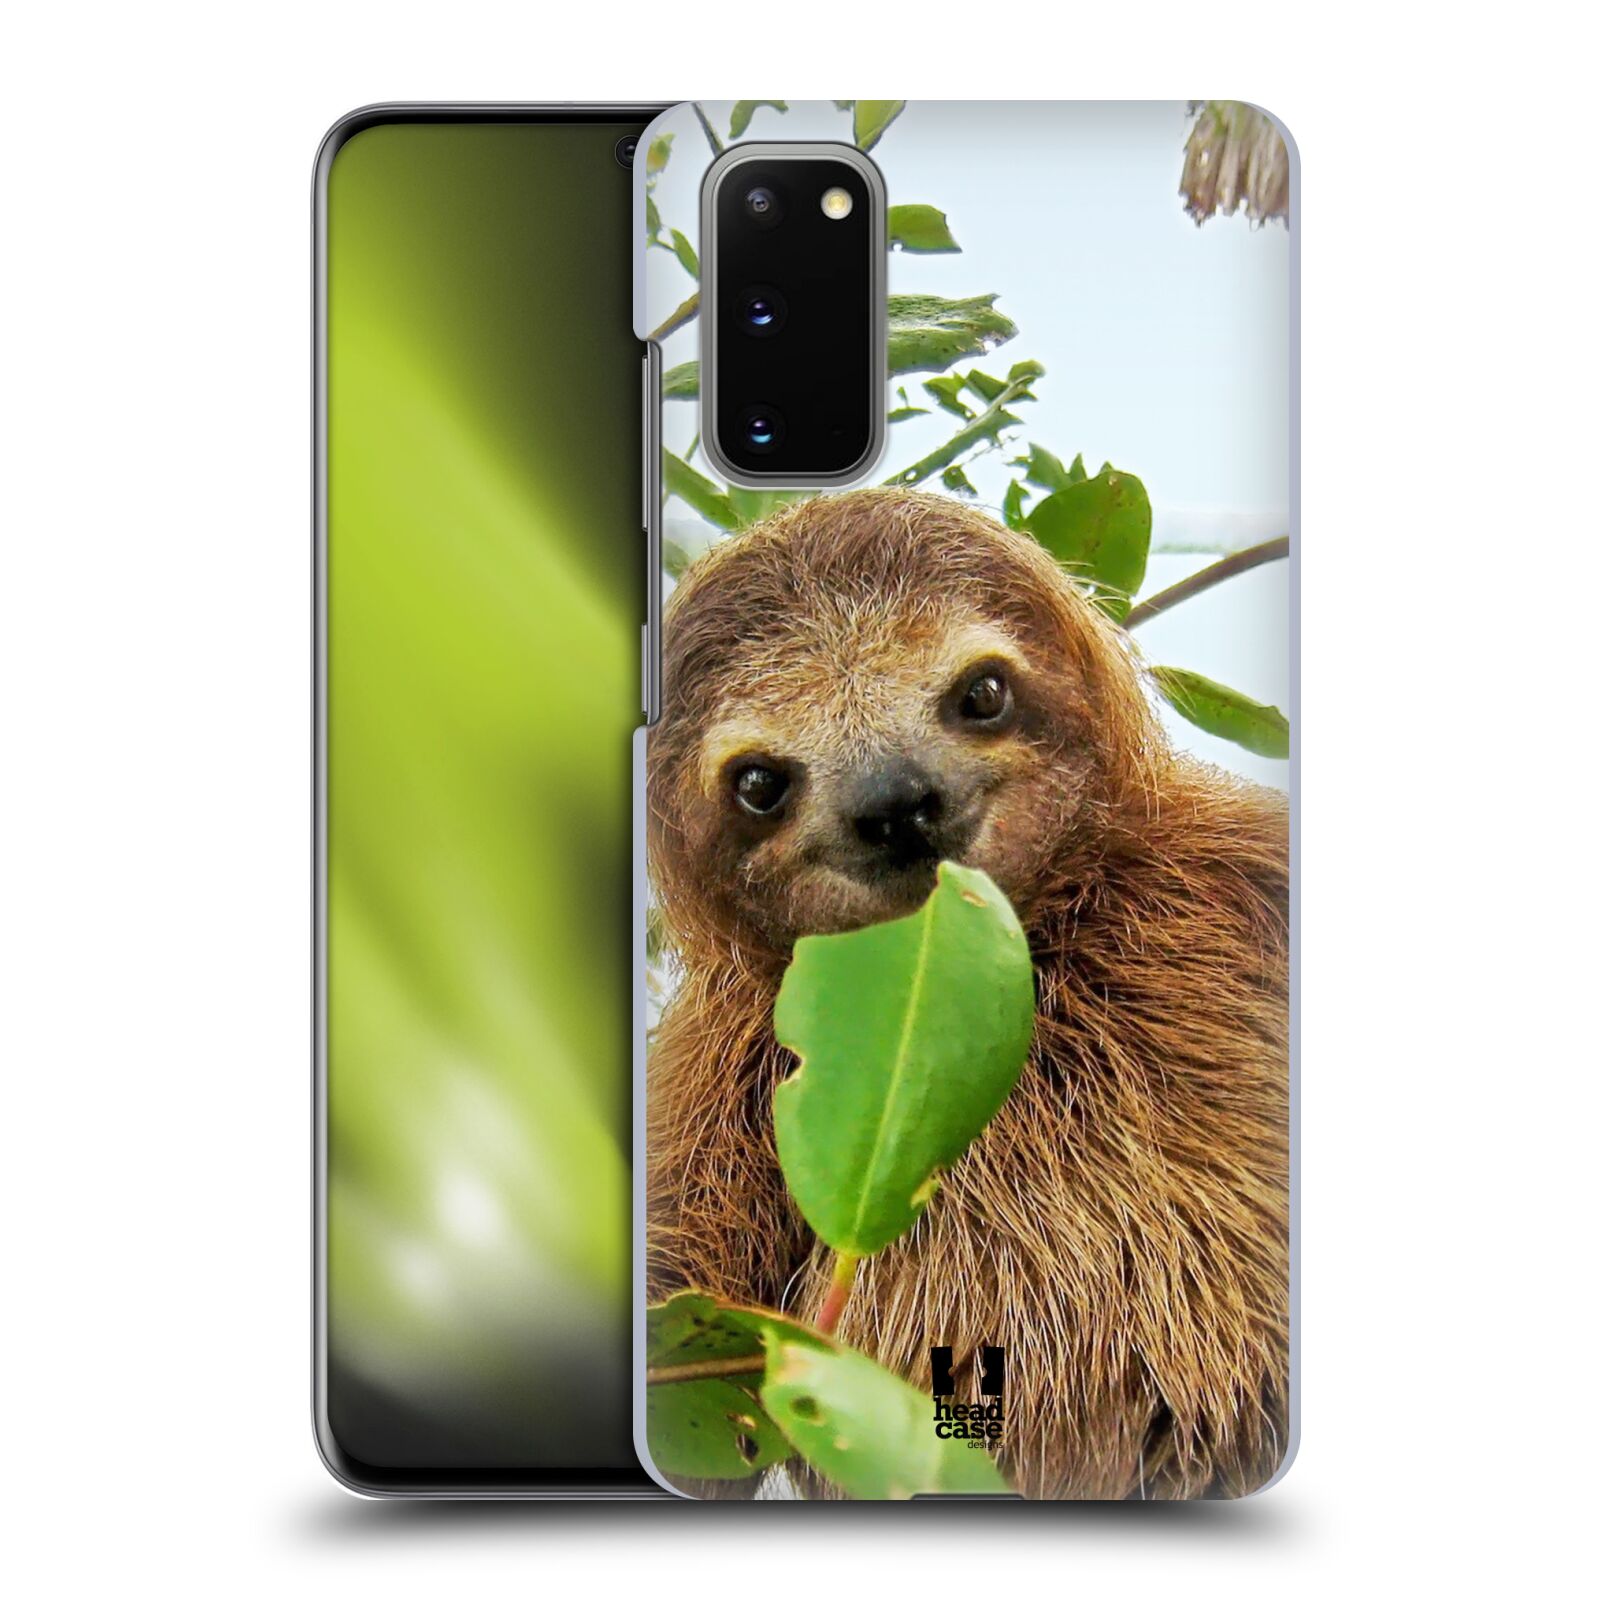 Pouzdro na mobil Samsung Galaxy S20 - HEAD CASE - vzor slavná zvířata foto lenochod